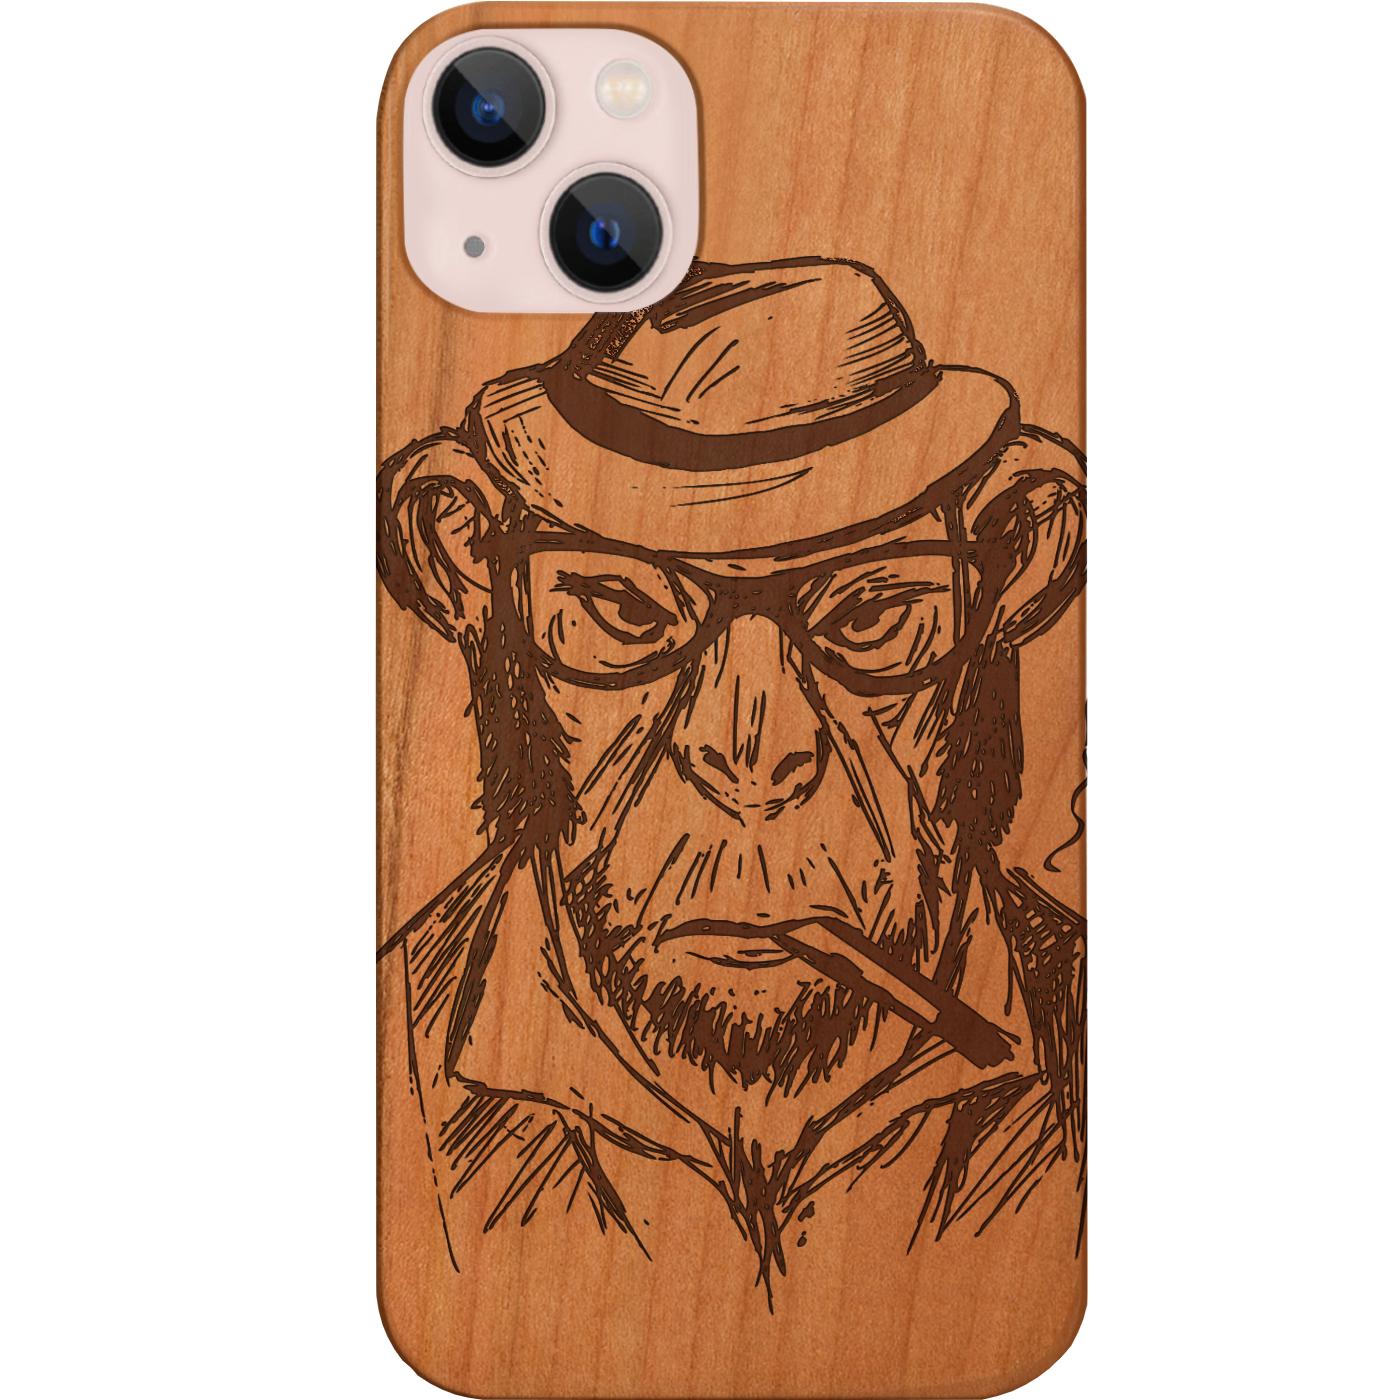 Smoking Gorilla - Engraved Phone Case